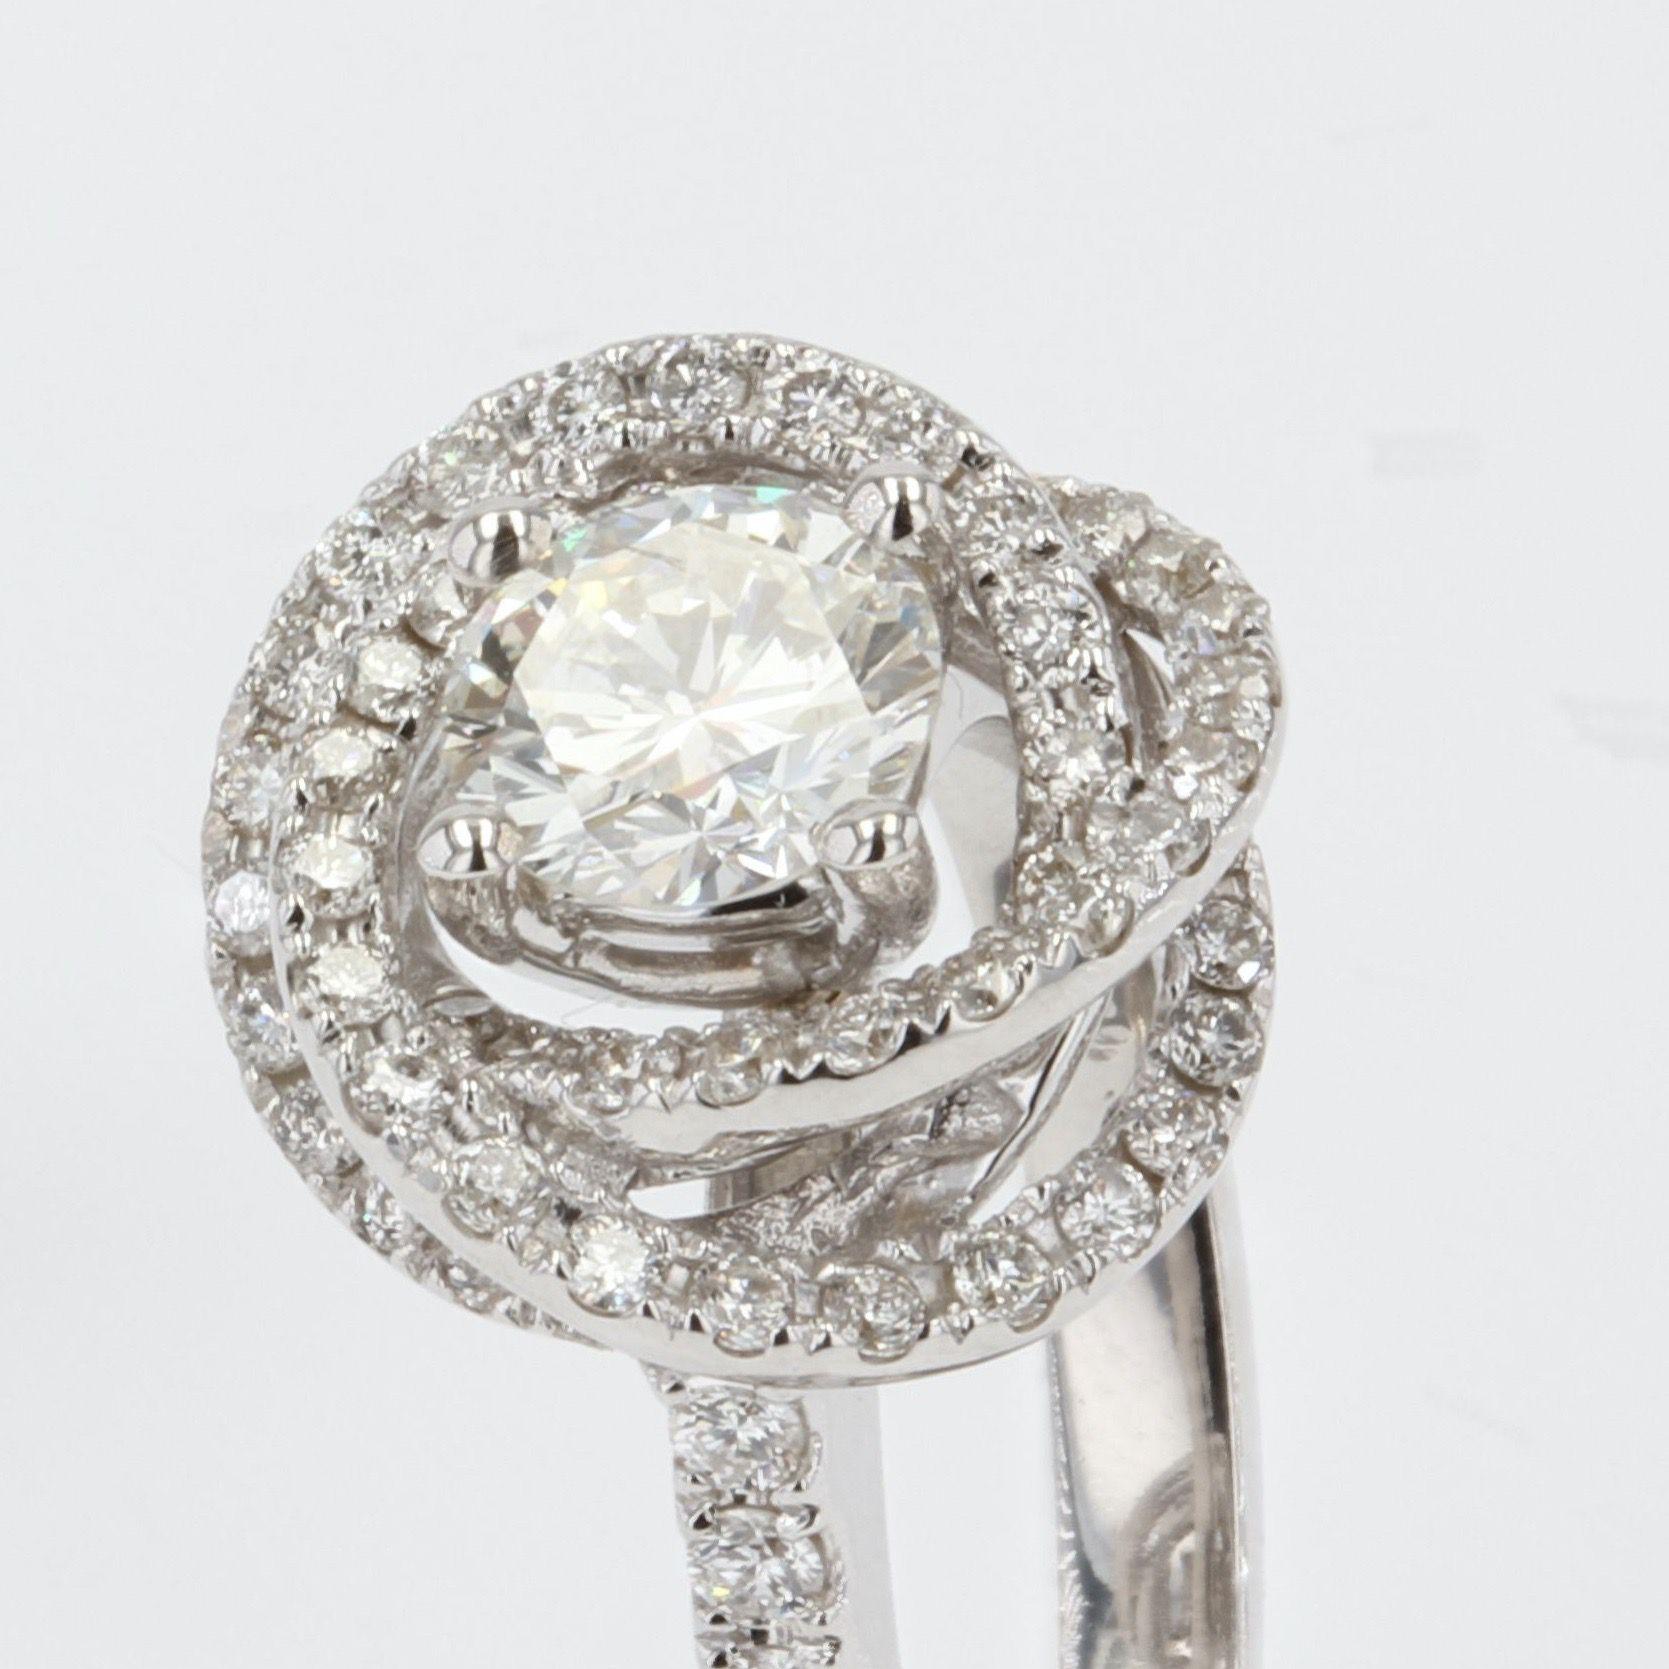 French Modern Diamond 18 Karat White Gold Flower Ring For Sale 2